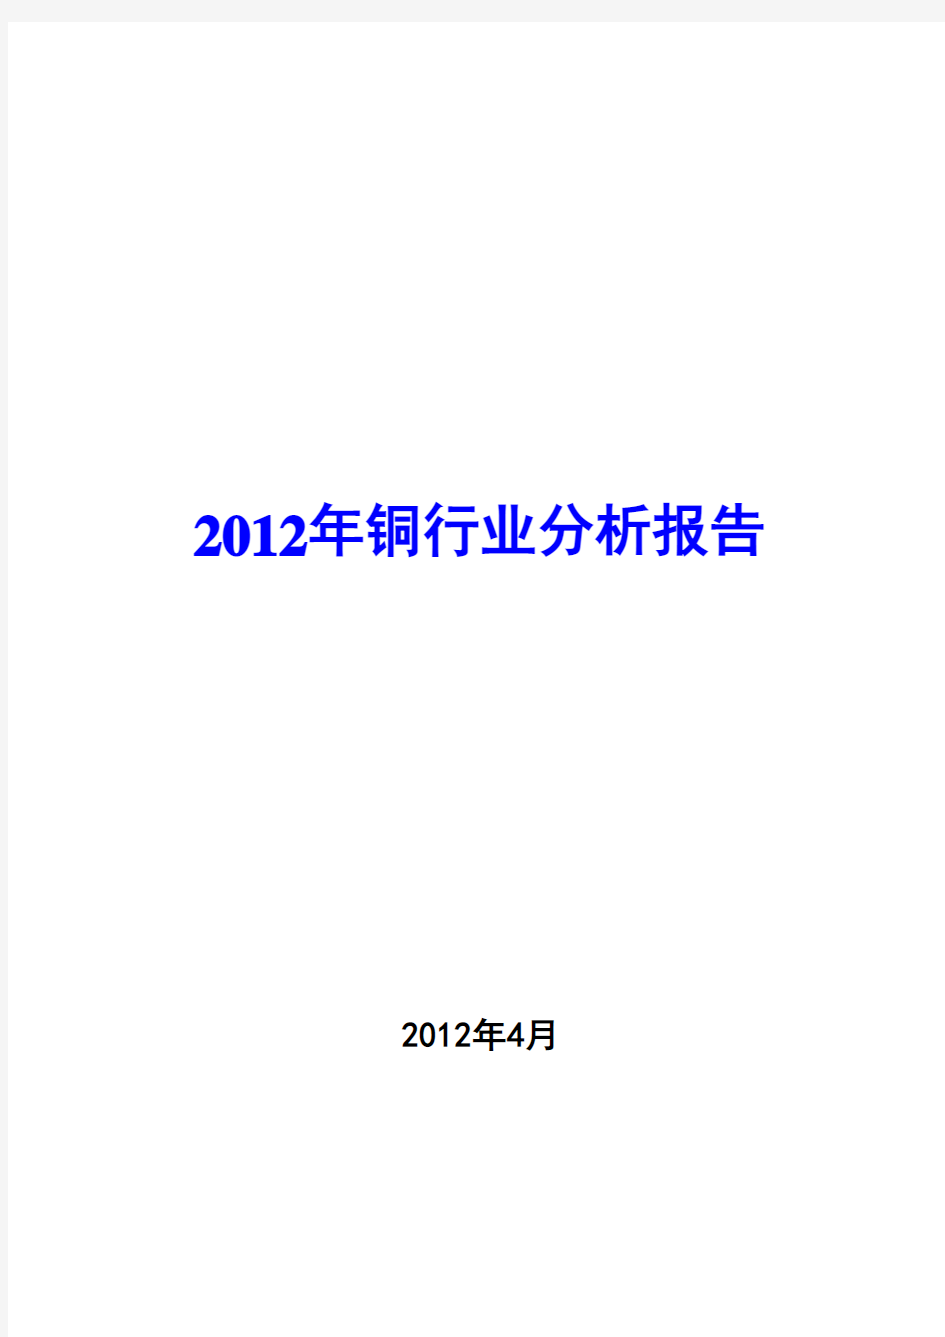 2012年铜行业分析报告